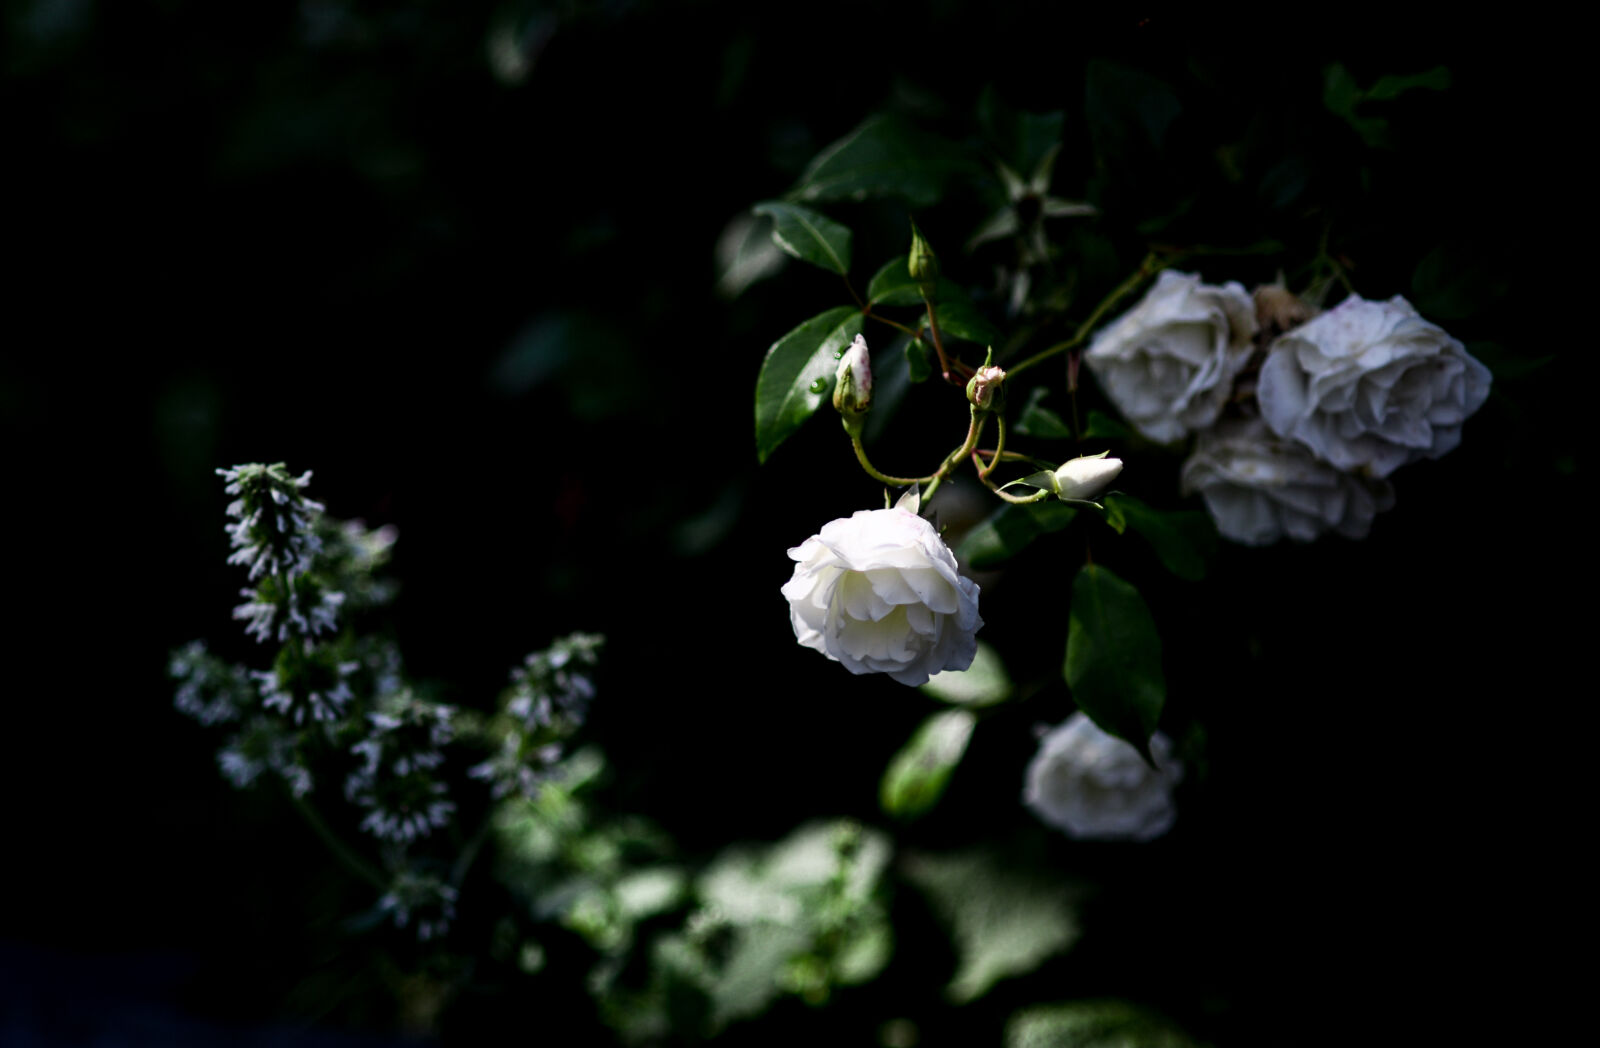 Nikon AF Nikkor 85mm F1.8D sample photo. Bloom, blossom, flower, nature photography